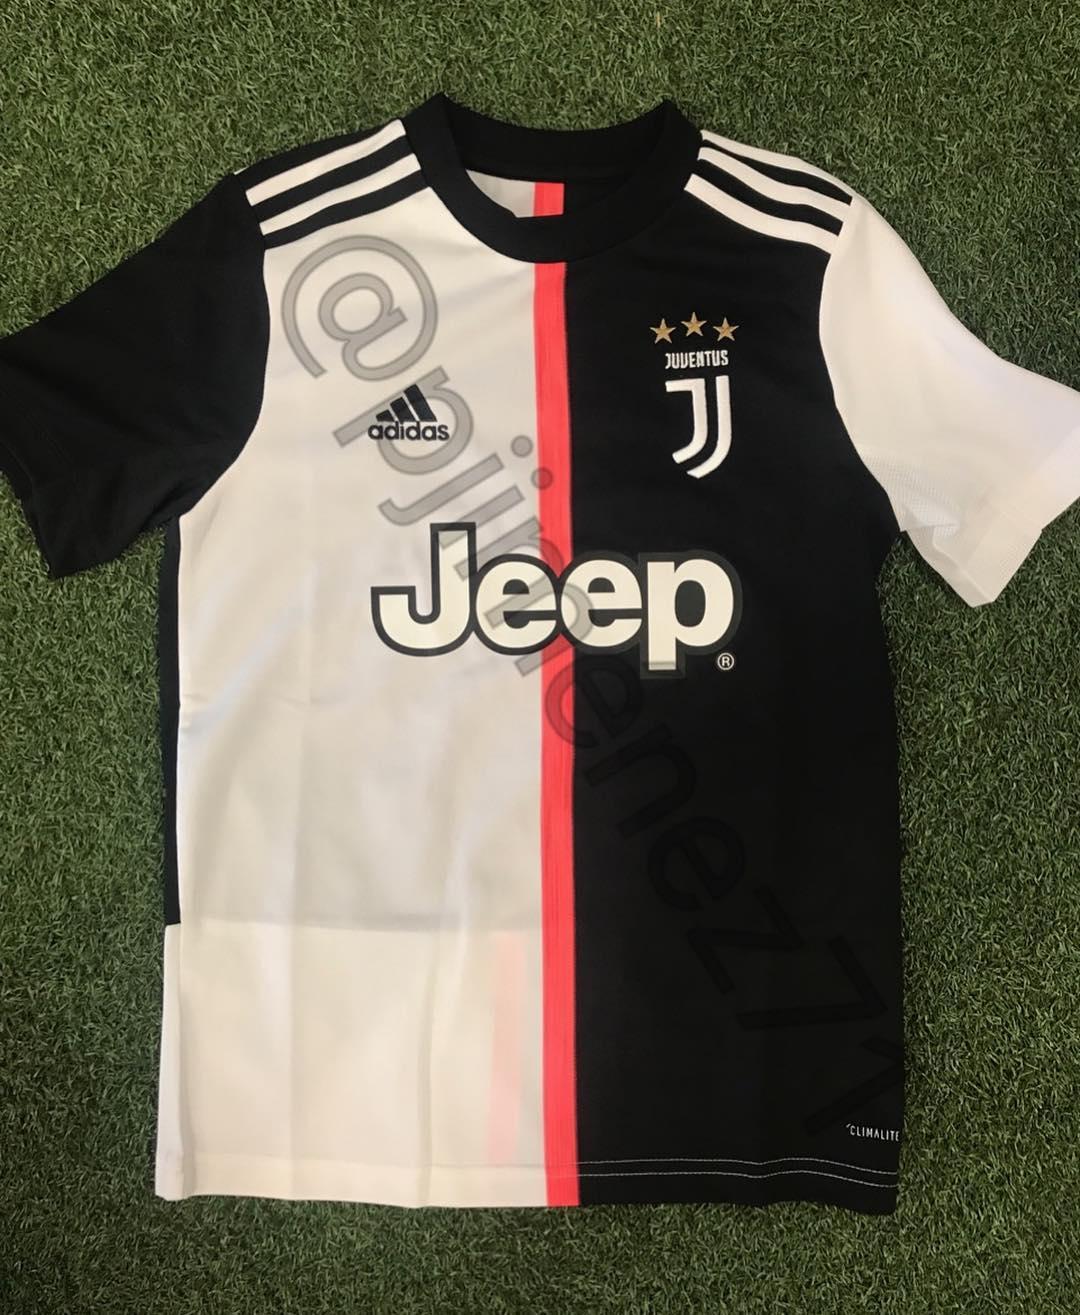 Nuova maglia Juventus 2019-2020: addio strisce bianconere